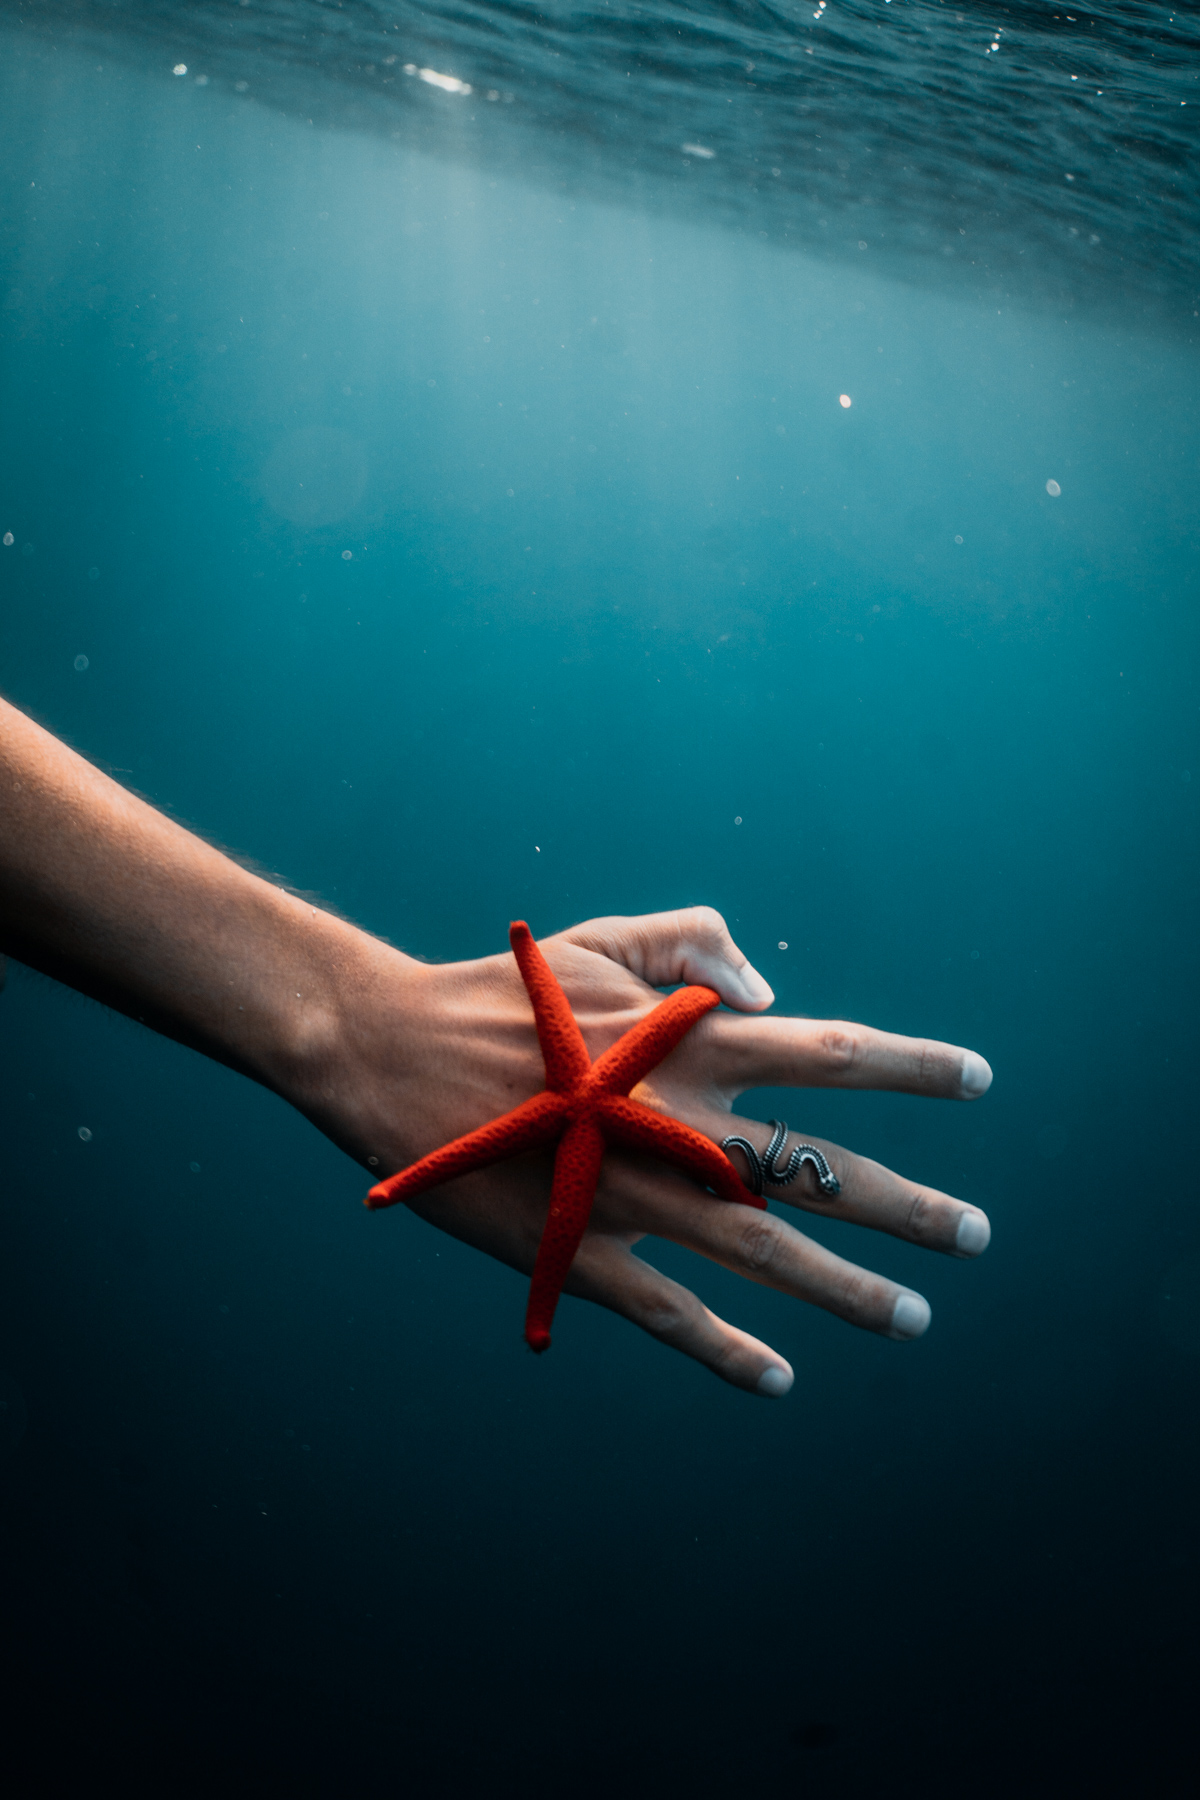 photographe underwater à marseille - séance photo sous marine